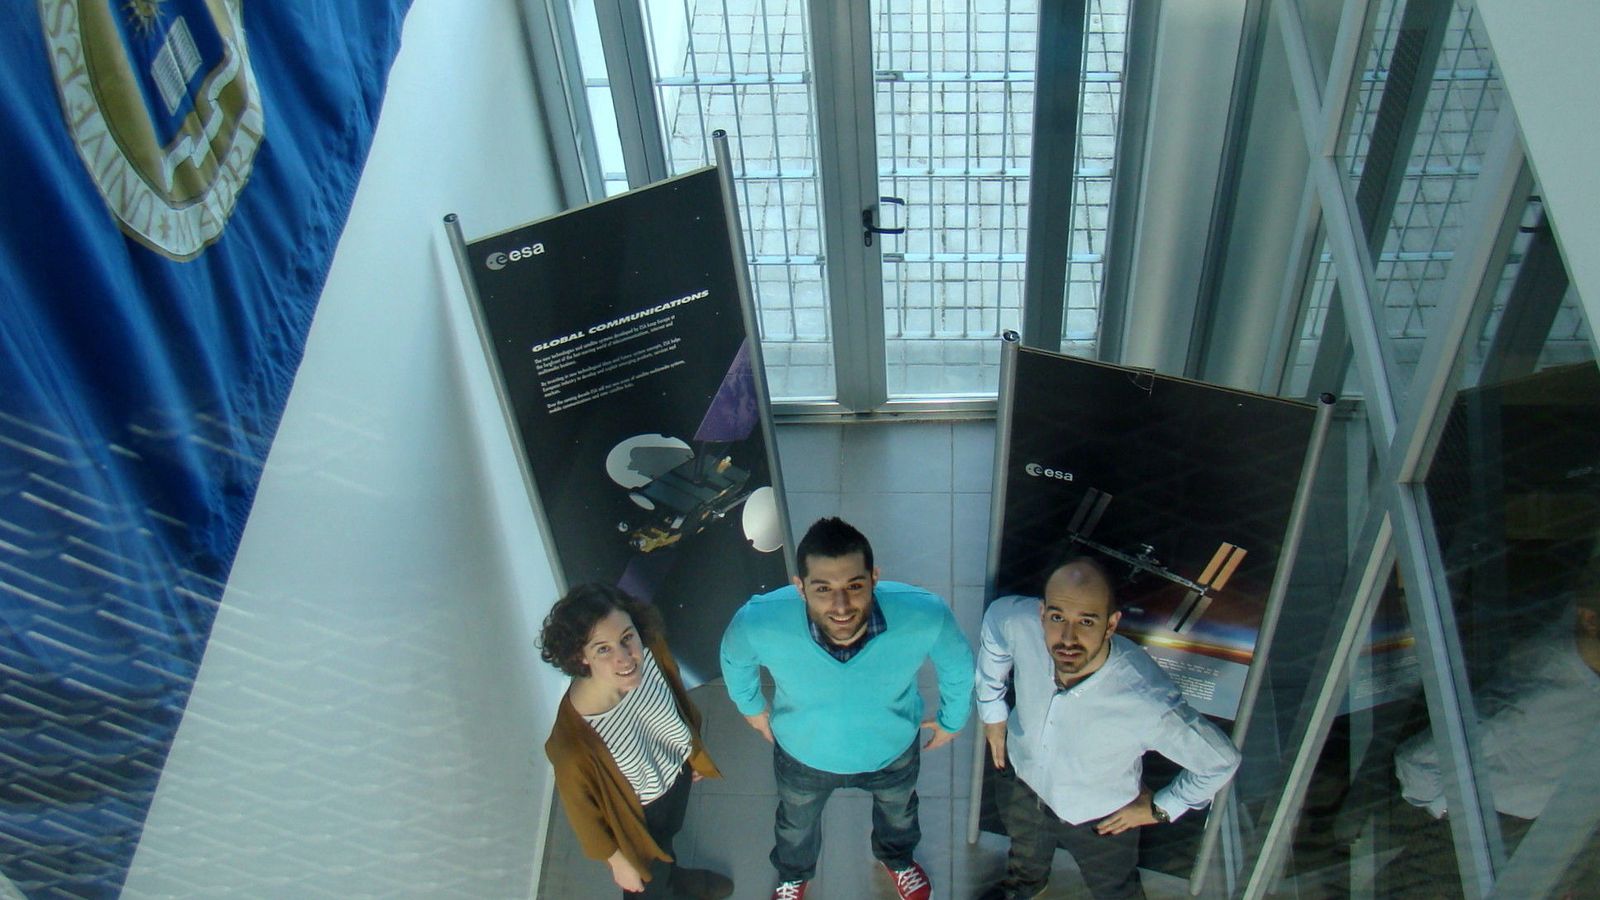 Foto: Andrés Cobos (centro), junto al equipo que coordina, es uno de los cuatro estudiantes europeos elegidos por la ESA para llevar sus experimentos a bordo de un vuelo parabólico.